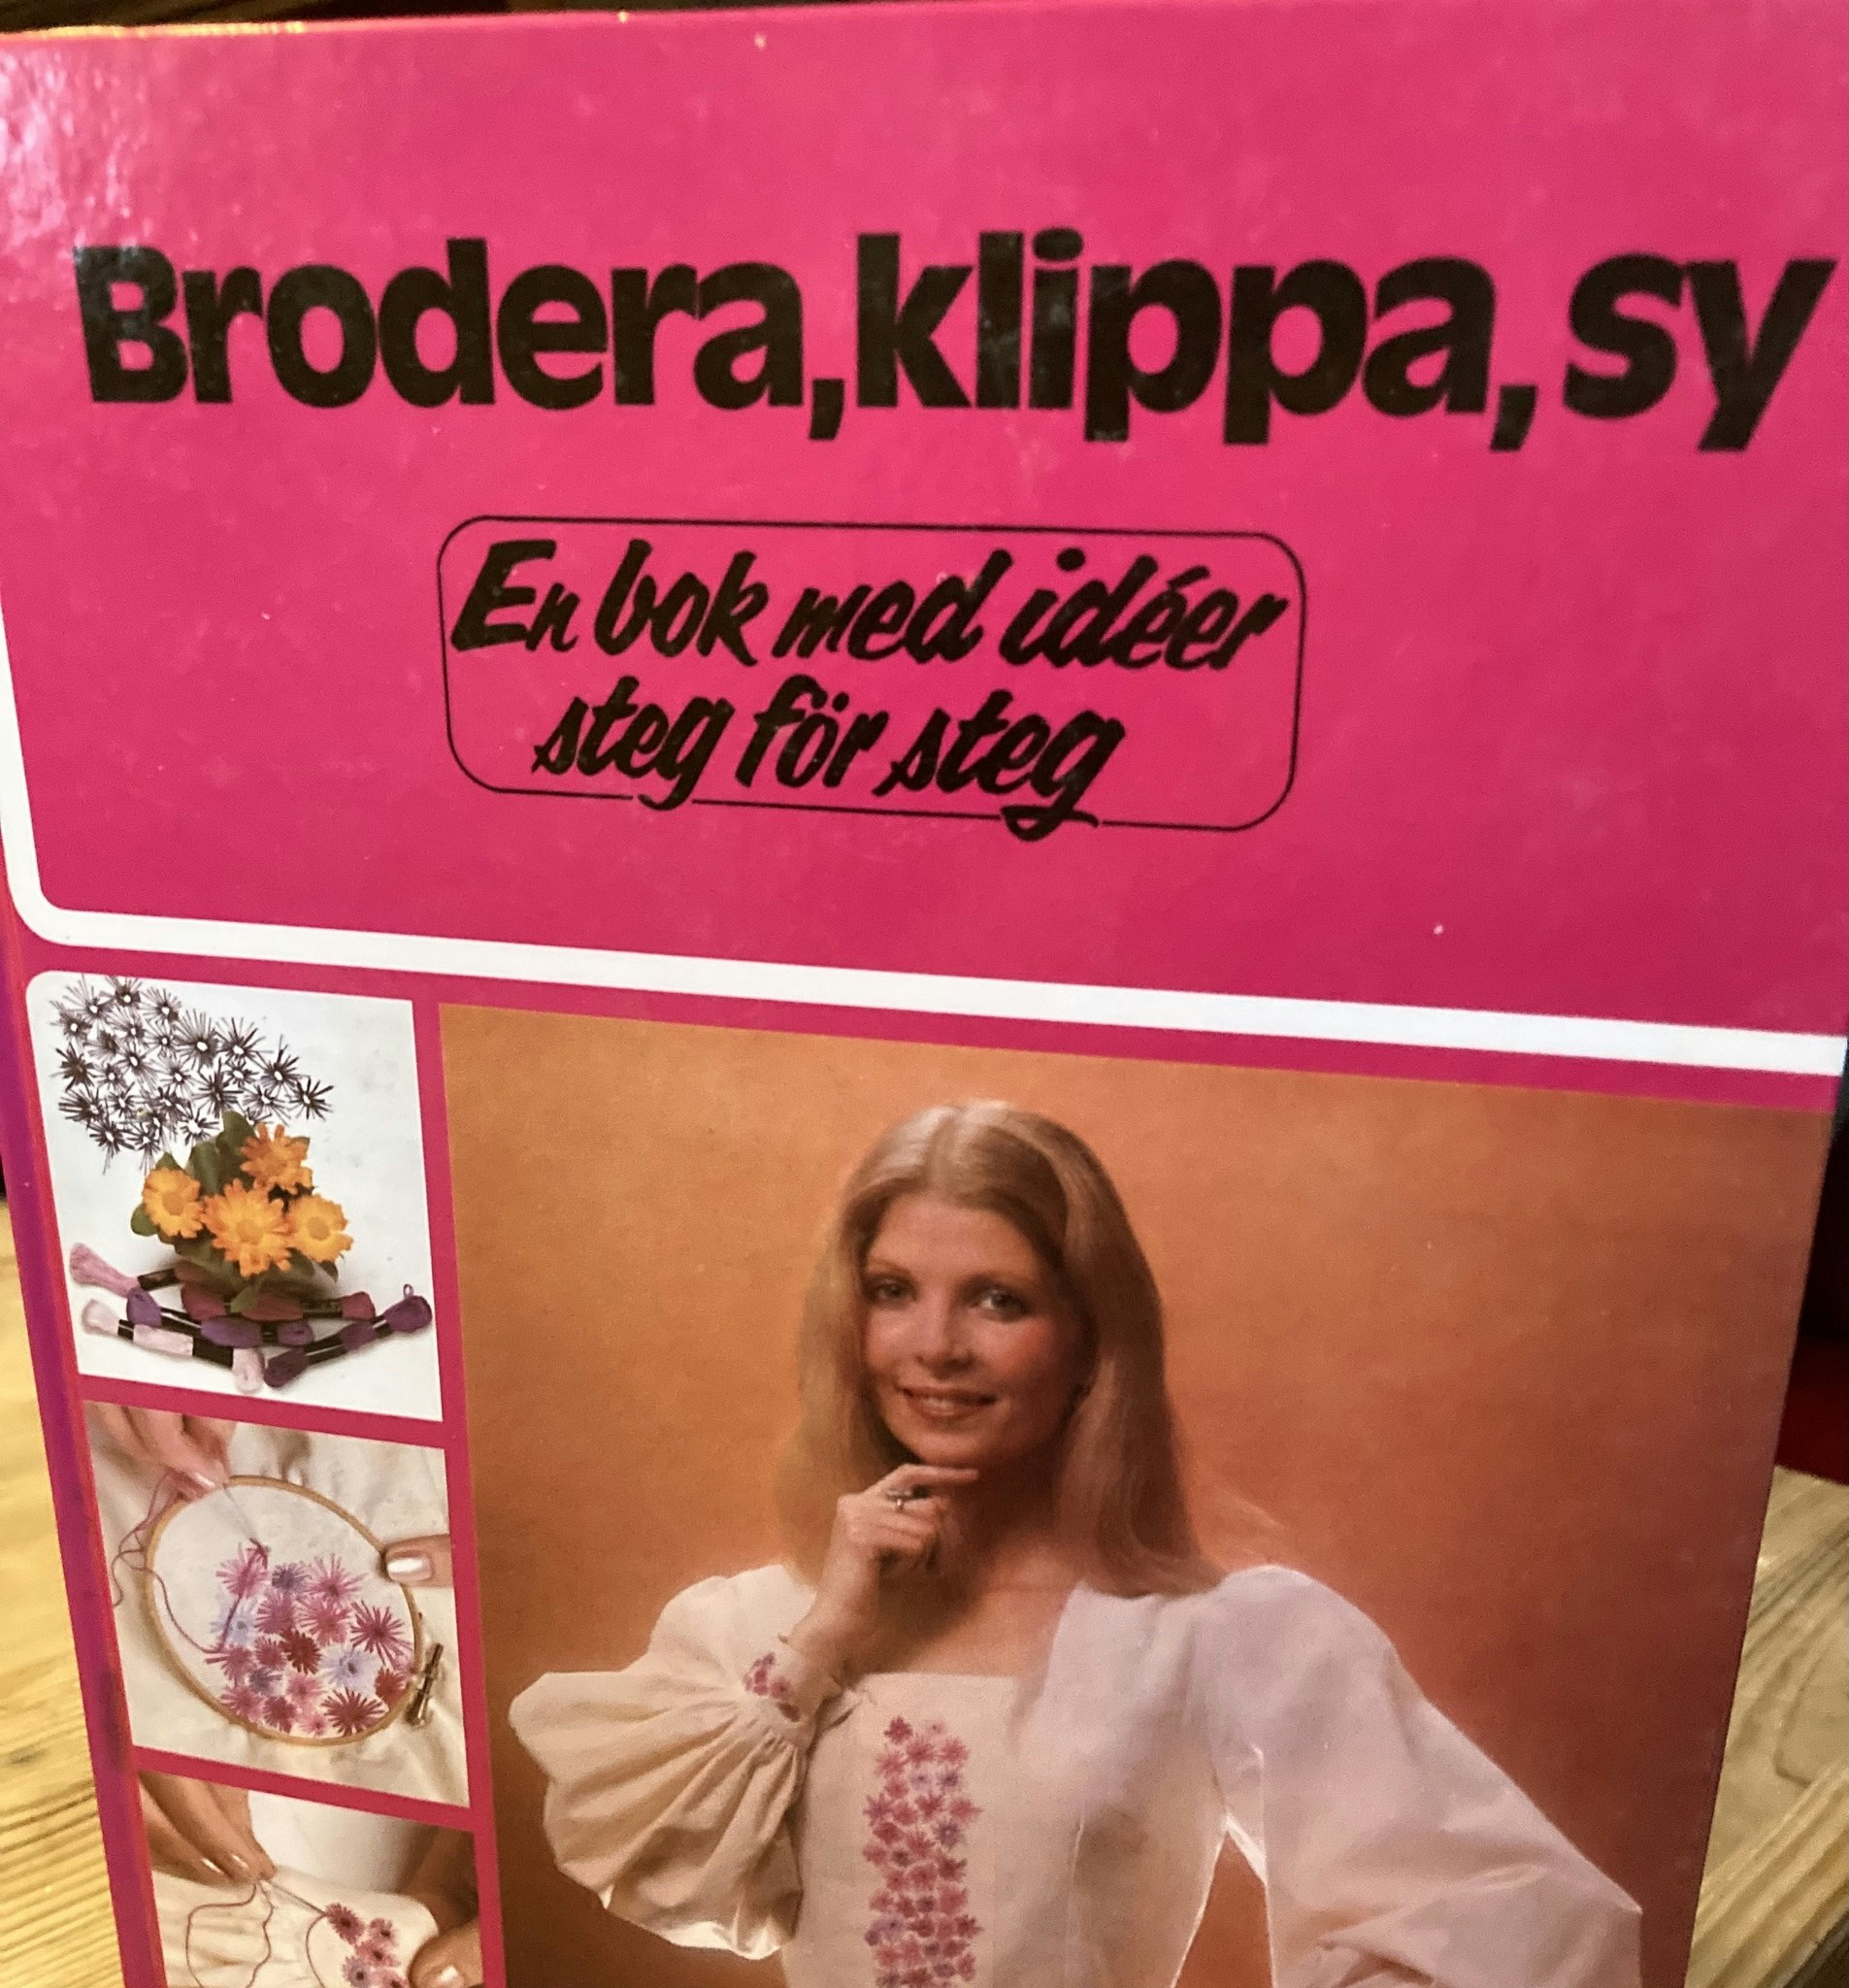 Ide’bok i sömnad.(1977)